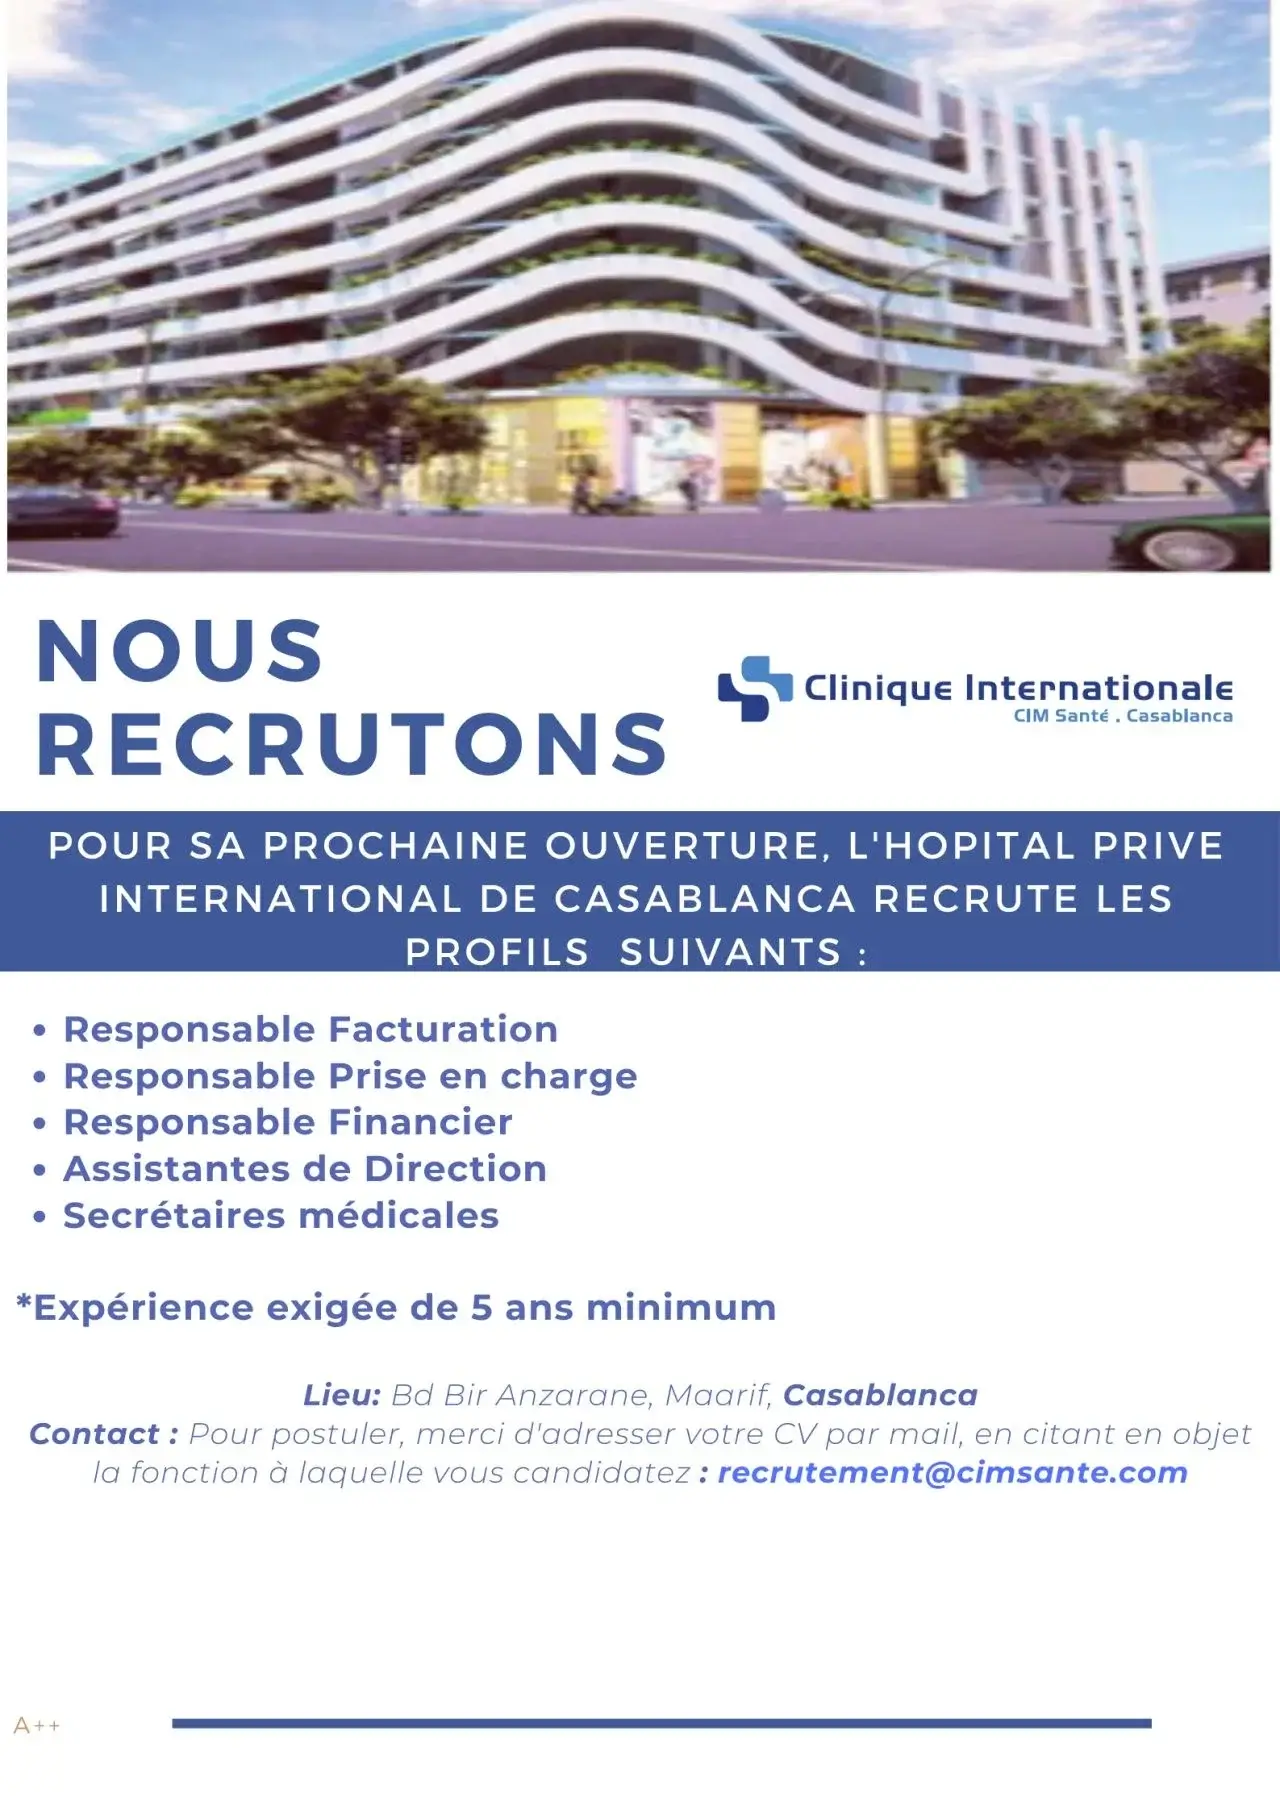 Clinique Internationale CIM Santé recrutement Casablanca